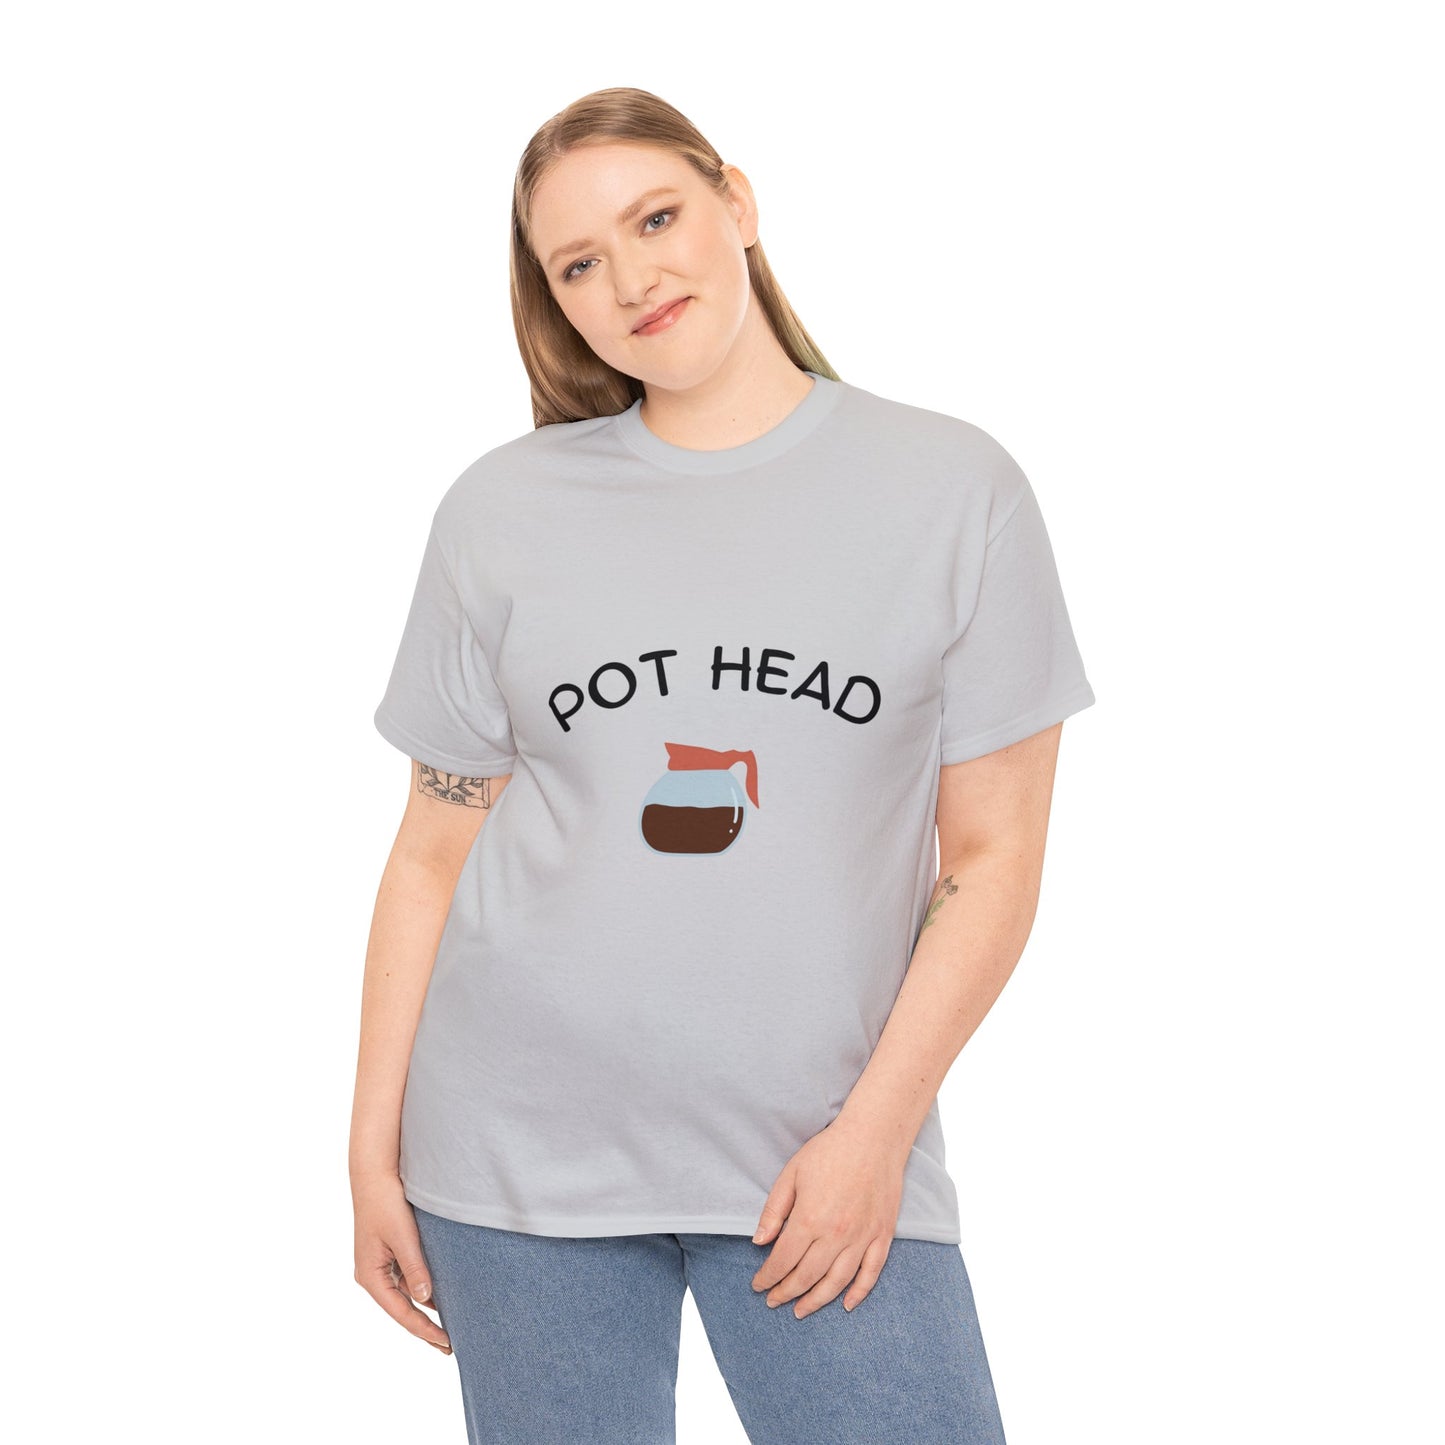 "Pot Head" - Tee